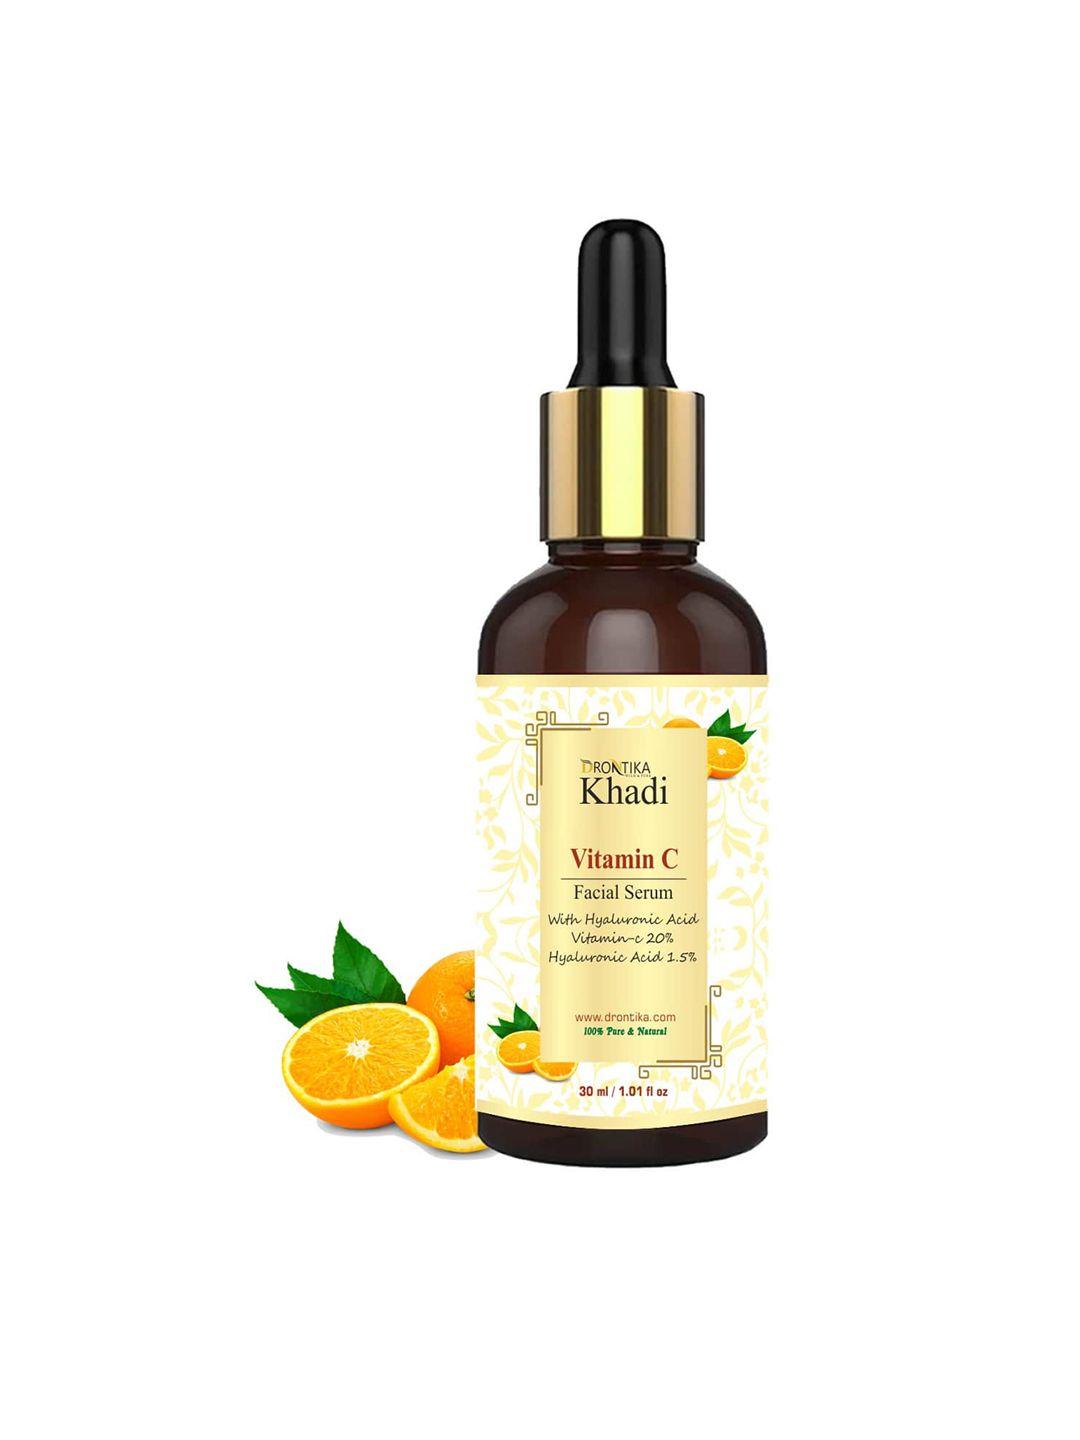 drontika 100% pure & natural khadi vitamin c facial serum with hyaluronic acid - 30 ml